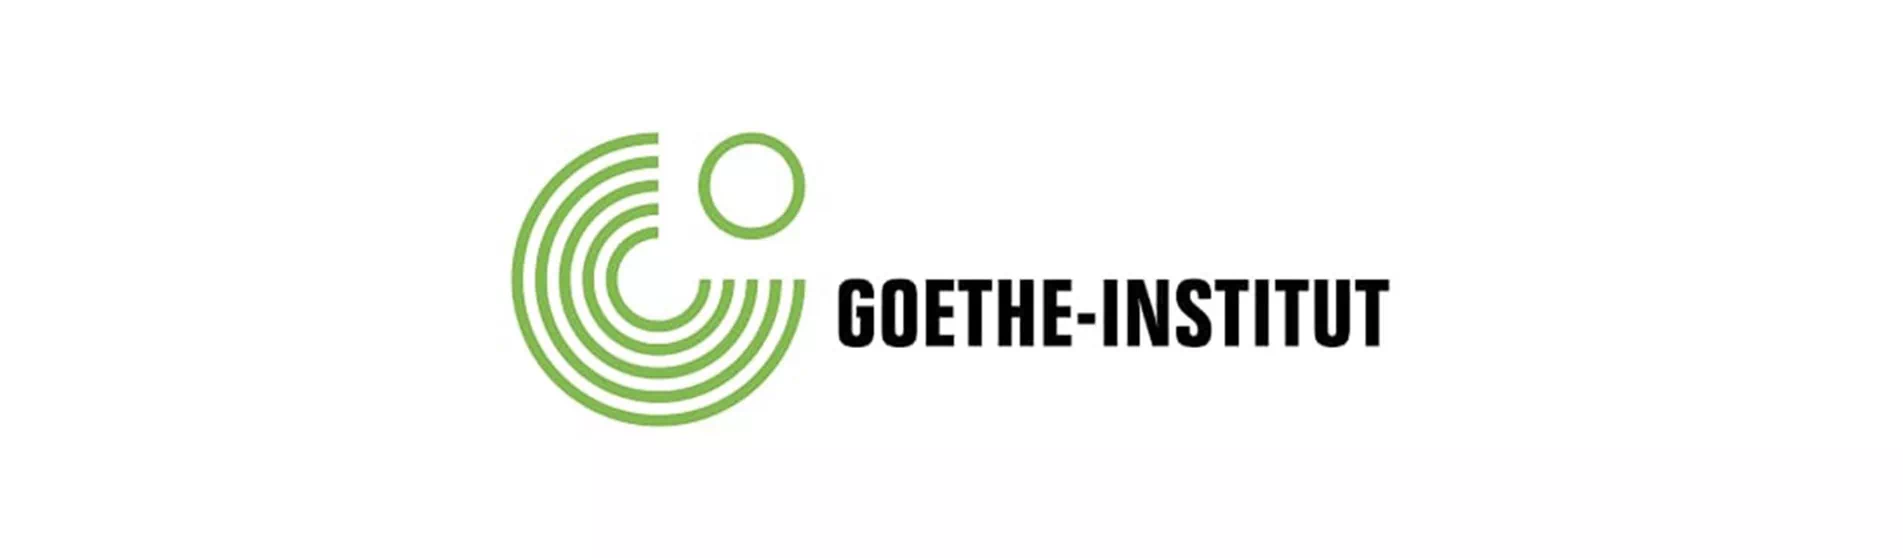 Goethe-Institut Sınavı